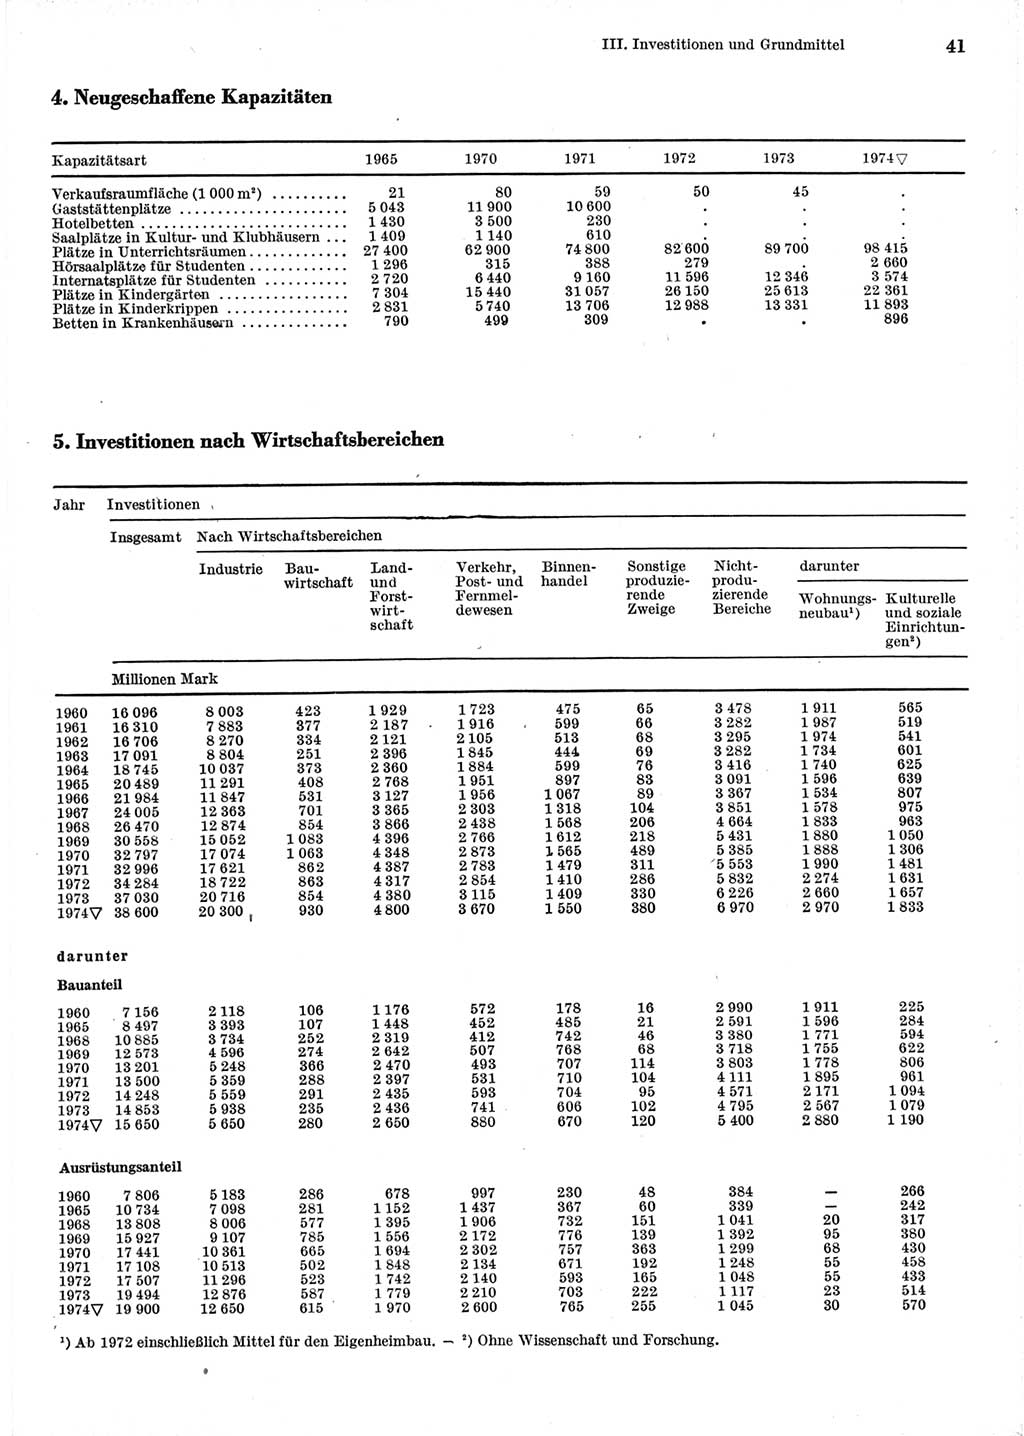 Statistisches Jahrbuch der Deutschen Demokratischen Republik (DDR) 1975, Seite 41 (Stat. Jb. DDR 1975, S. 41)